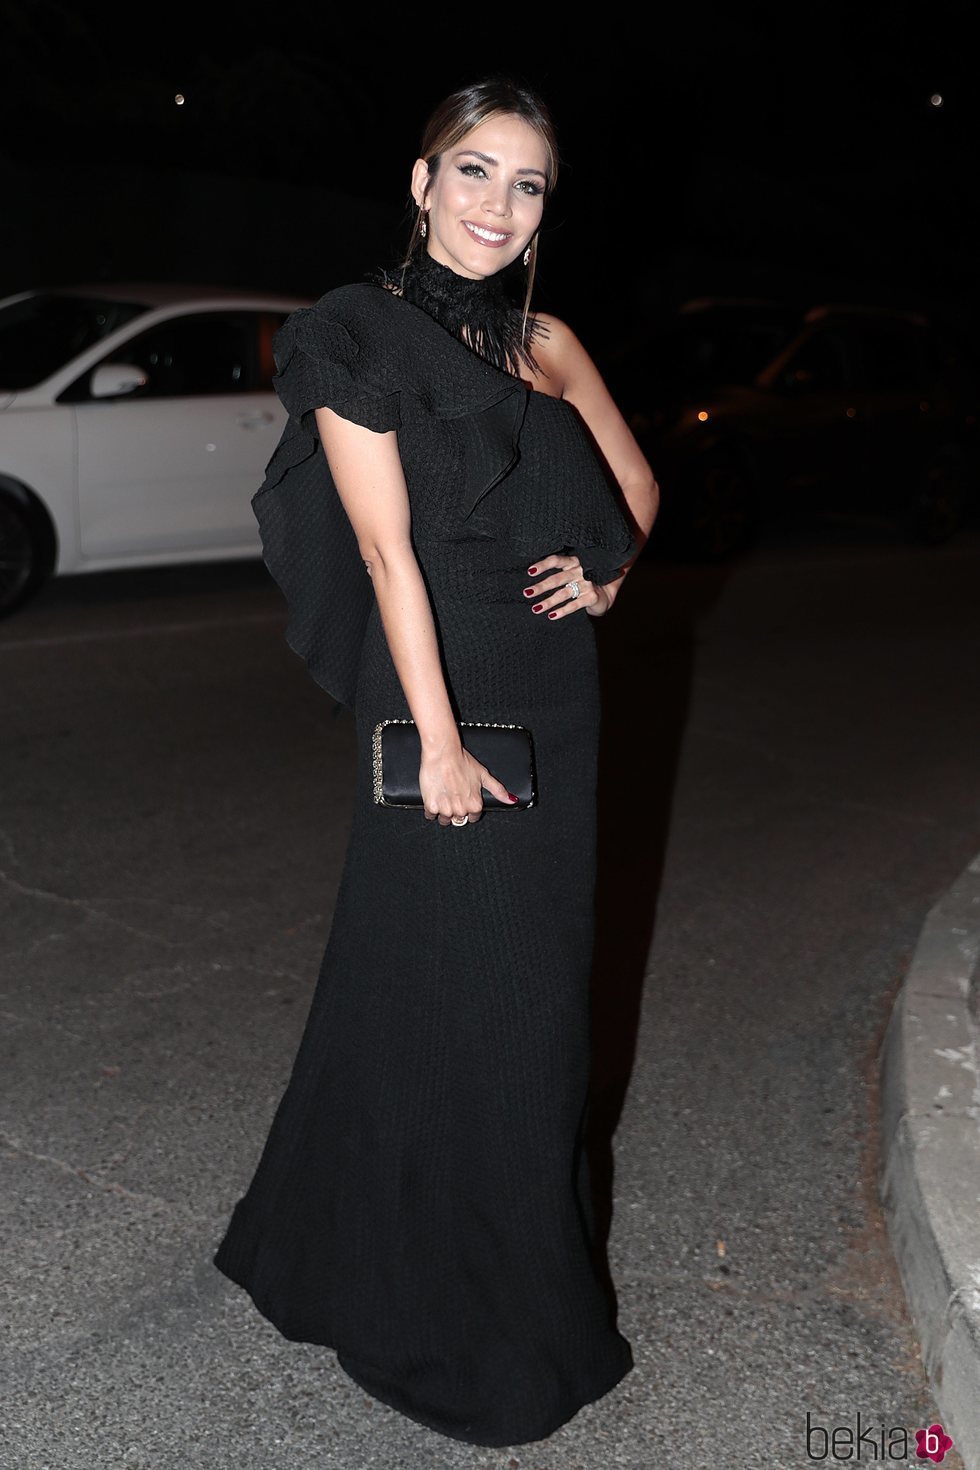 Rosanna Zanetti llegando a la fiesta del 30 aniversario de Vogue